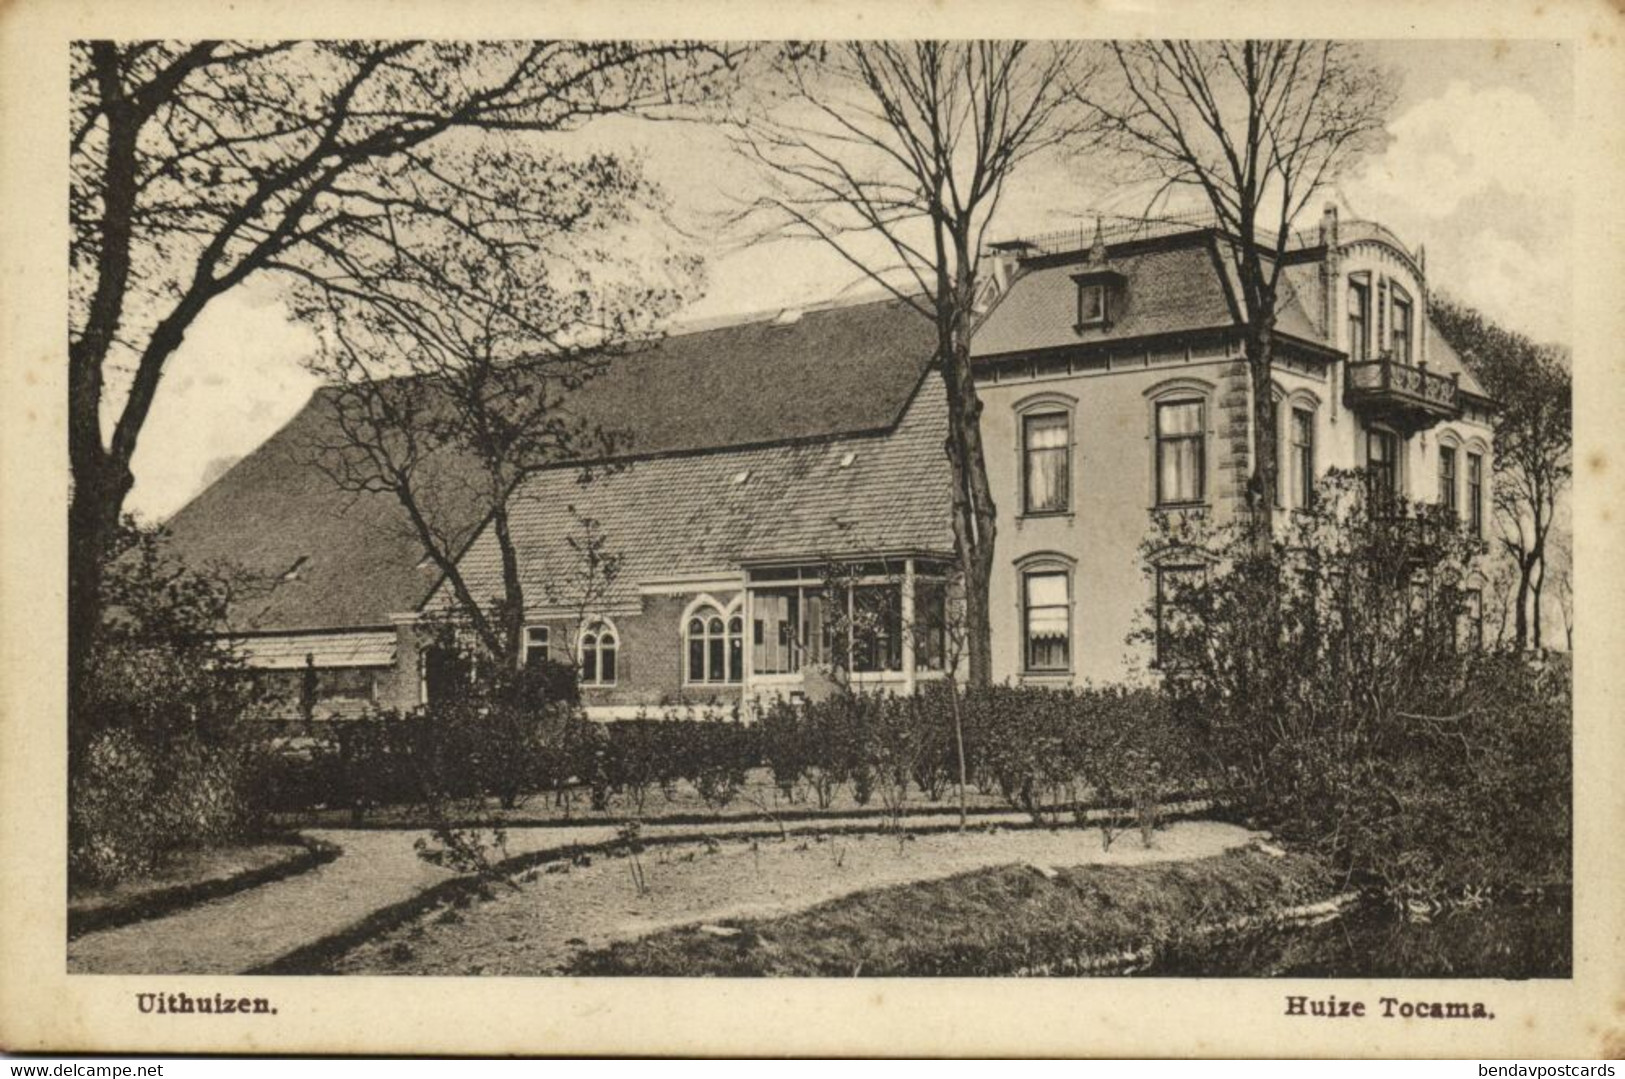 Nederland, UITHUIZEN, Huize Tocama (1910s) Ansichtkaart - Uithuizen